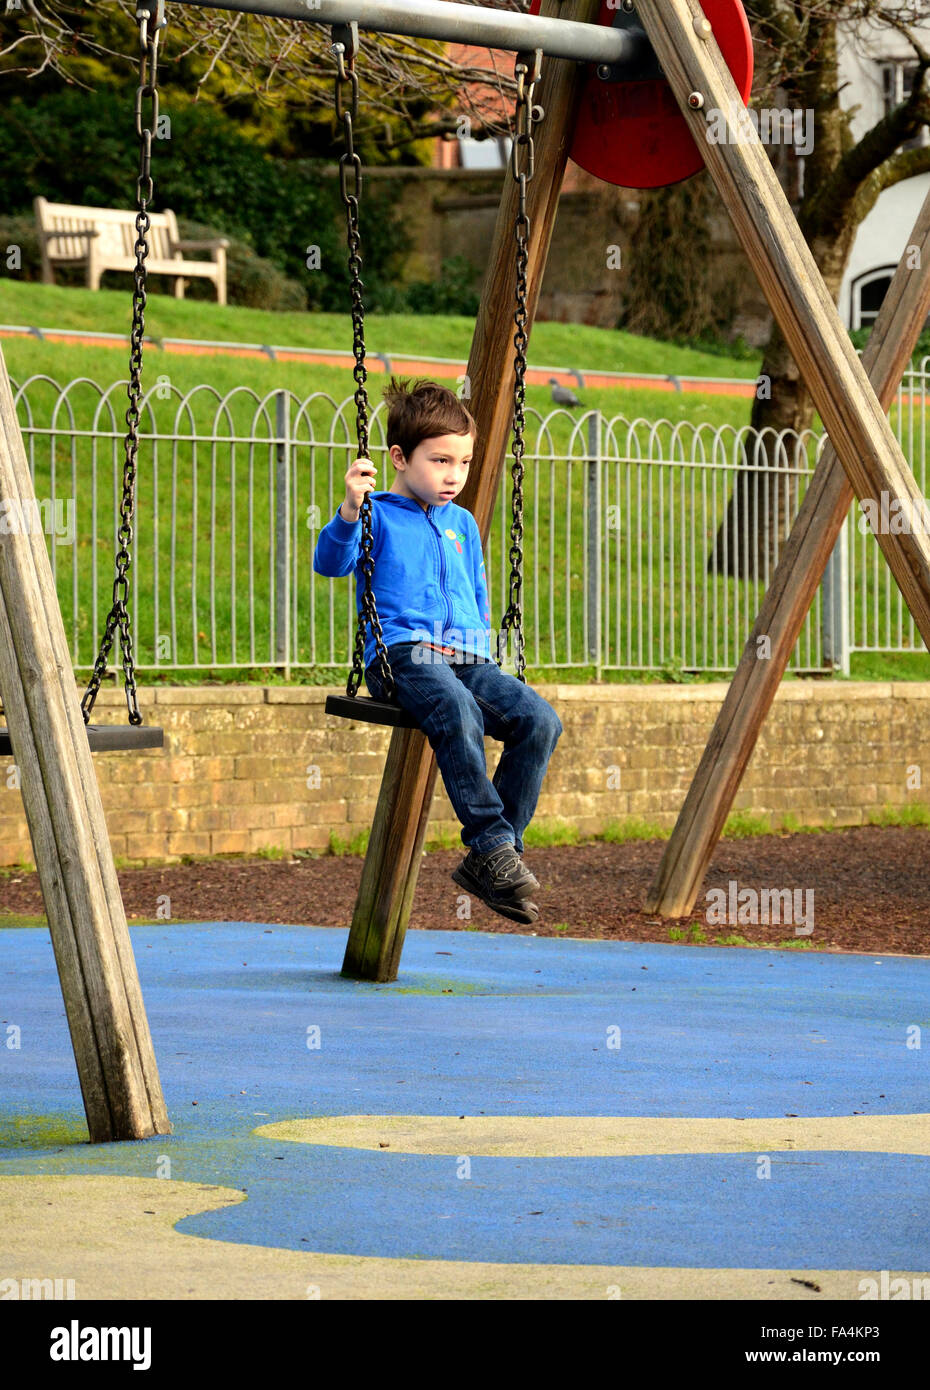 Un garçon d'une veste bleue est assis sur une balançoire dans un aire de jeux pour enfants. Banque D'Images